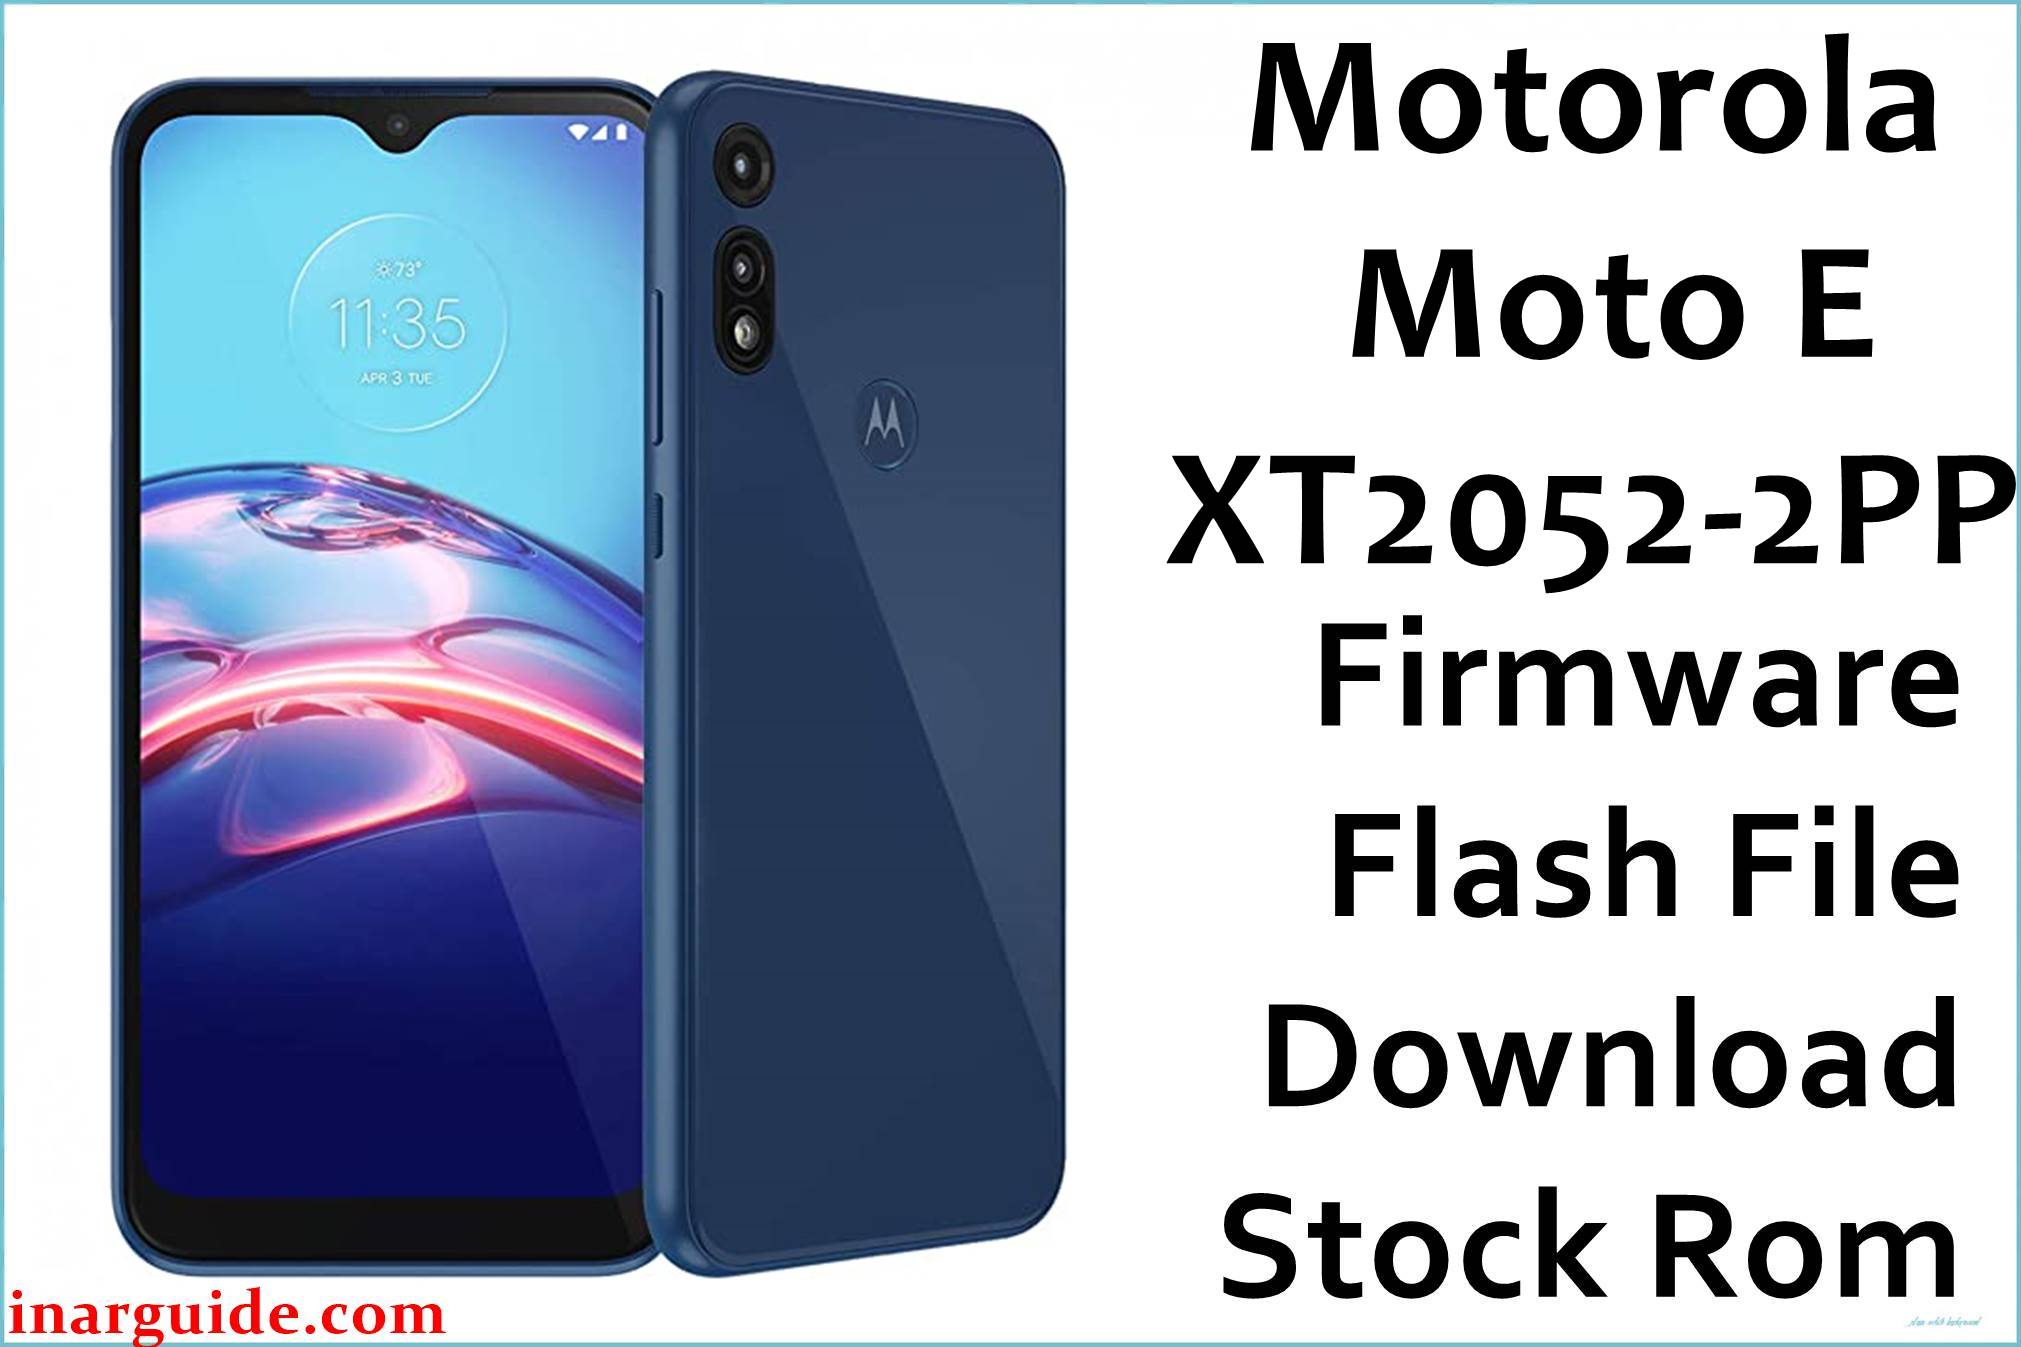 Motorola Moto E XT2052-2PP